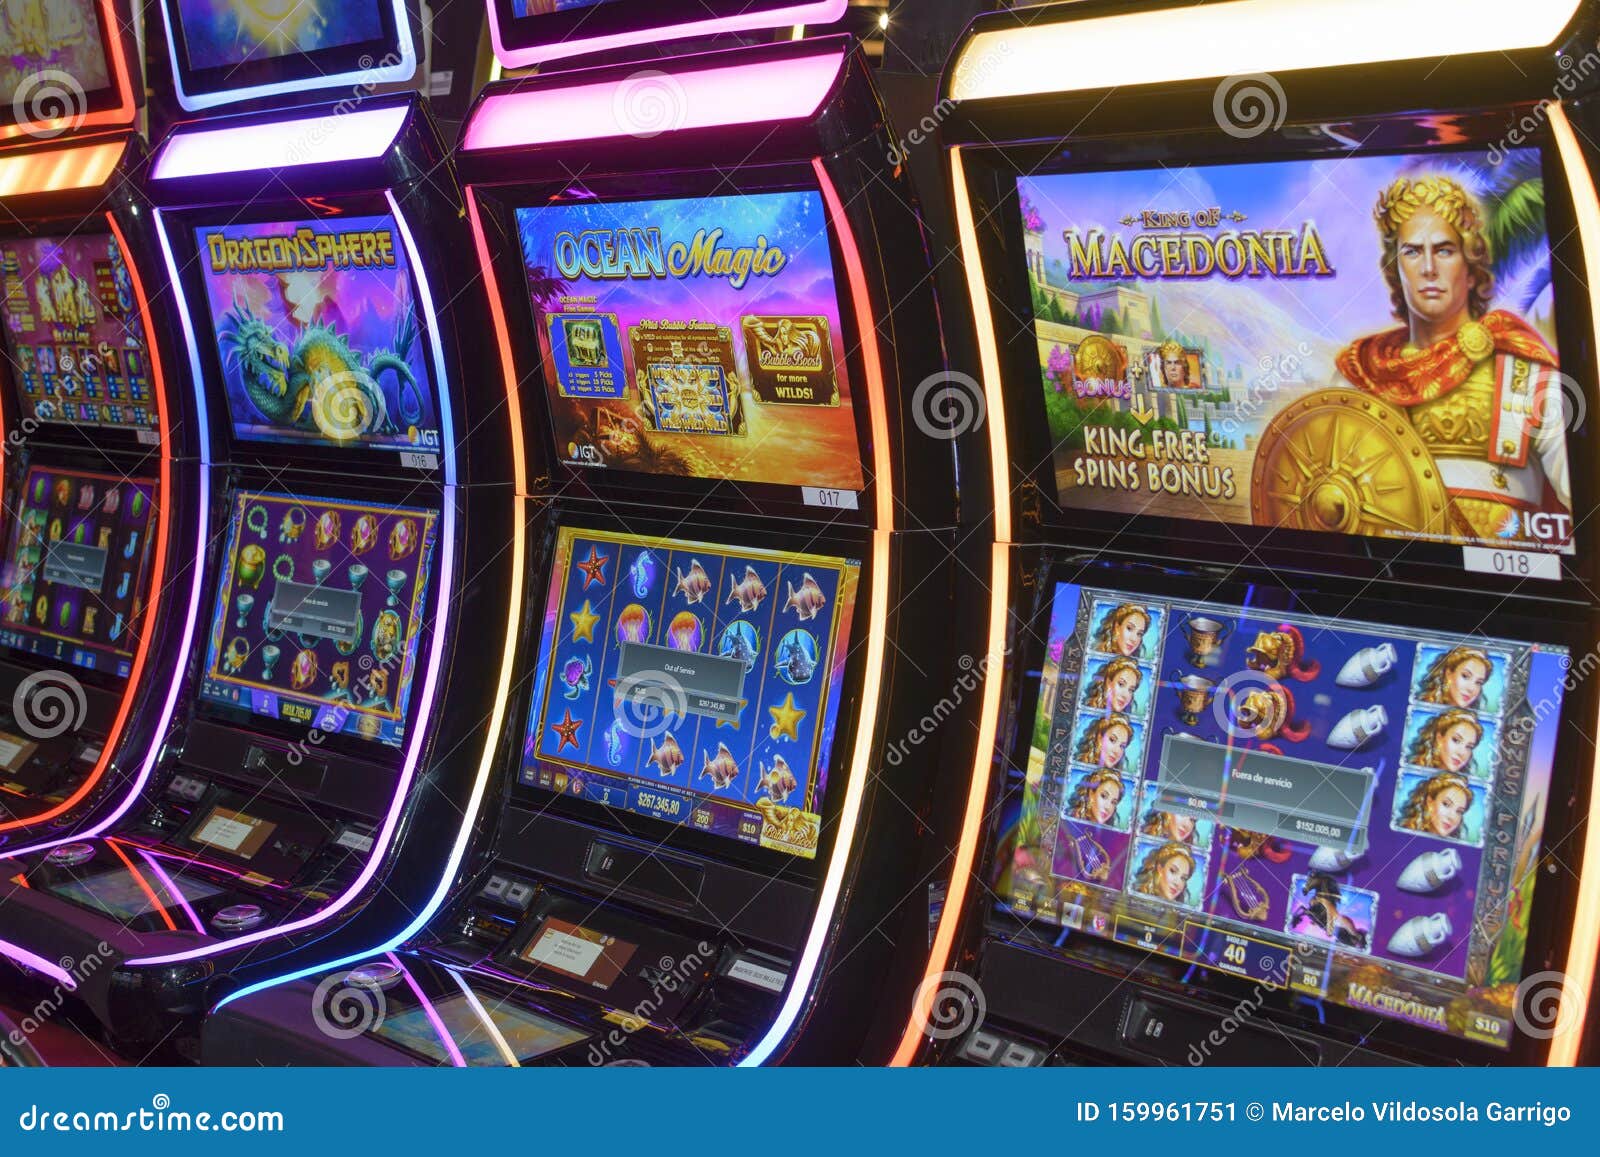 Wenig bekannte Möglichkeiten, sich von jugar casino online zu befreien